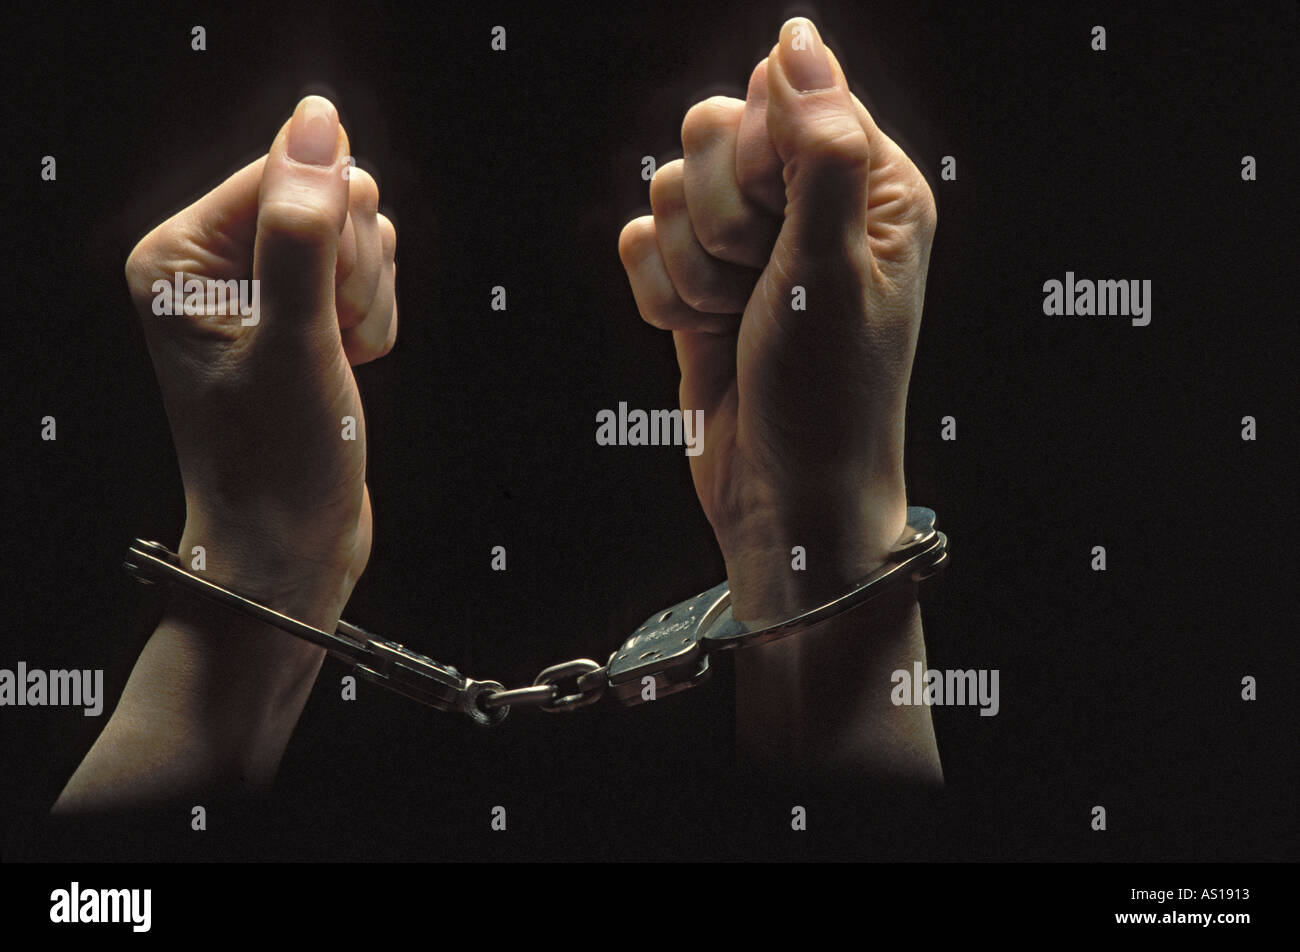 Les mains de la femme emprisonnée dans les tenailles d'poings menottés et silhouetté sur fond noir Banque D'Images